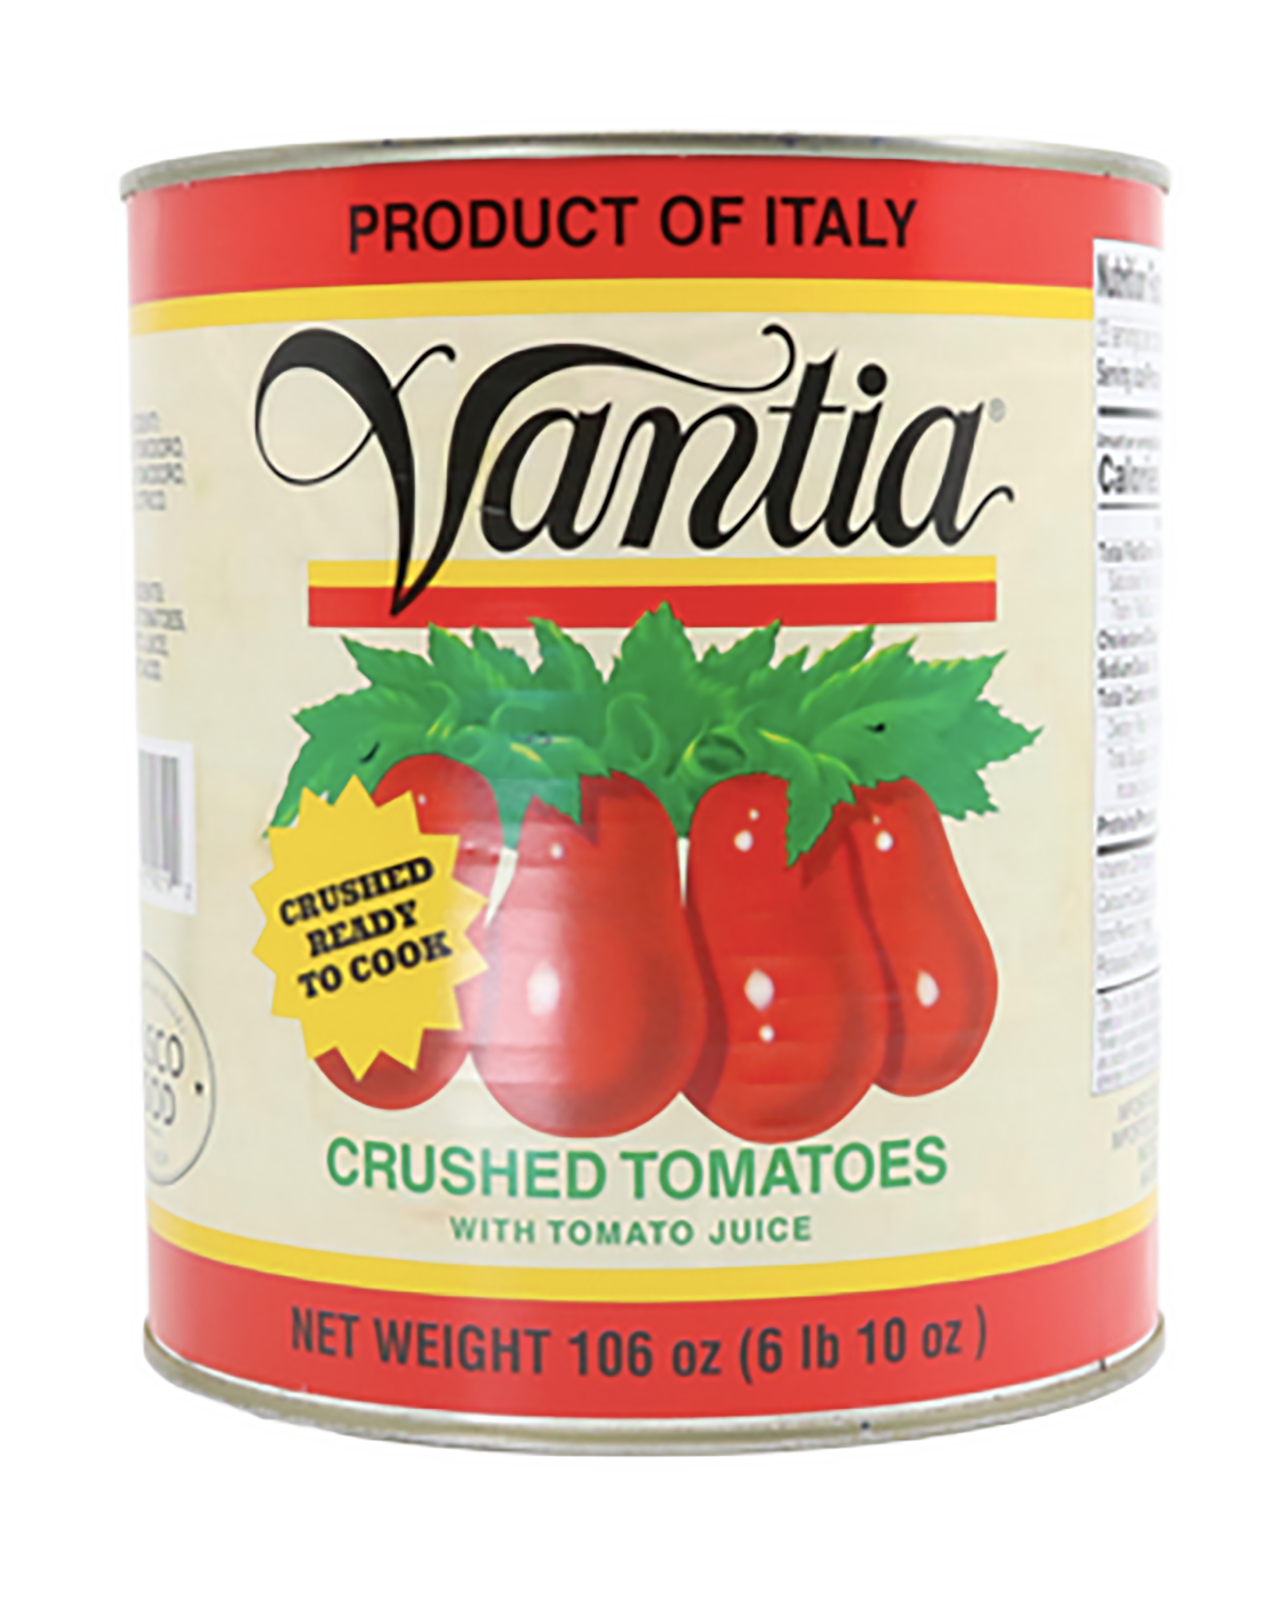 Italian Crushed Tomatoes 106 oz (PACKS OF 6)